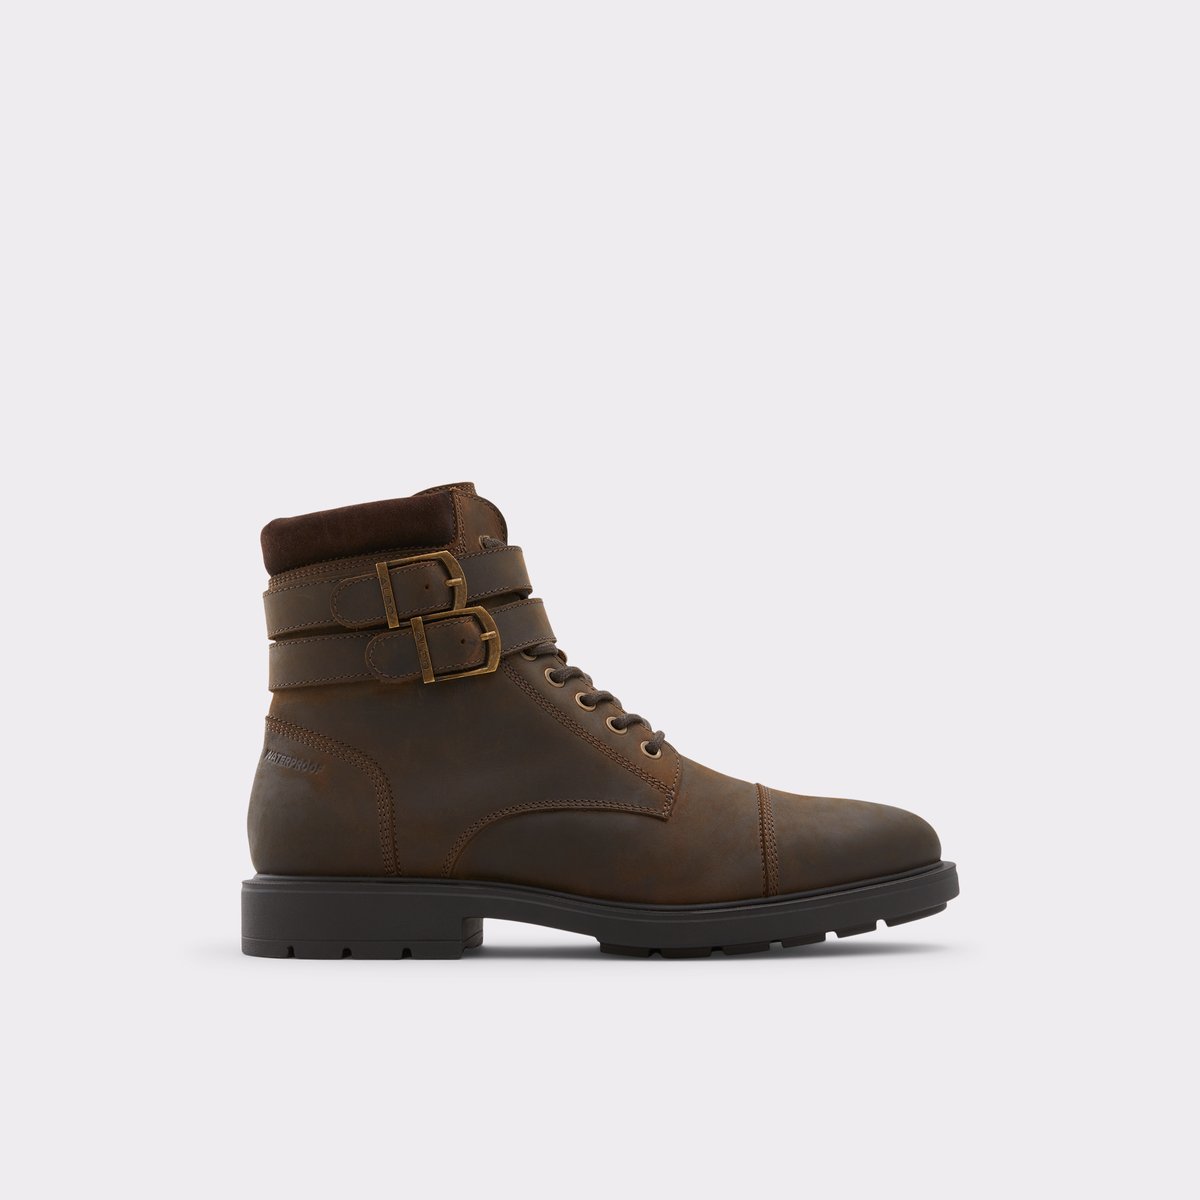 Jokubas Dark Brown Men's Casual boots | ALDO US